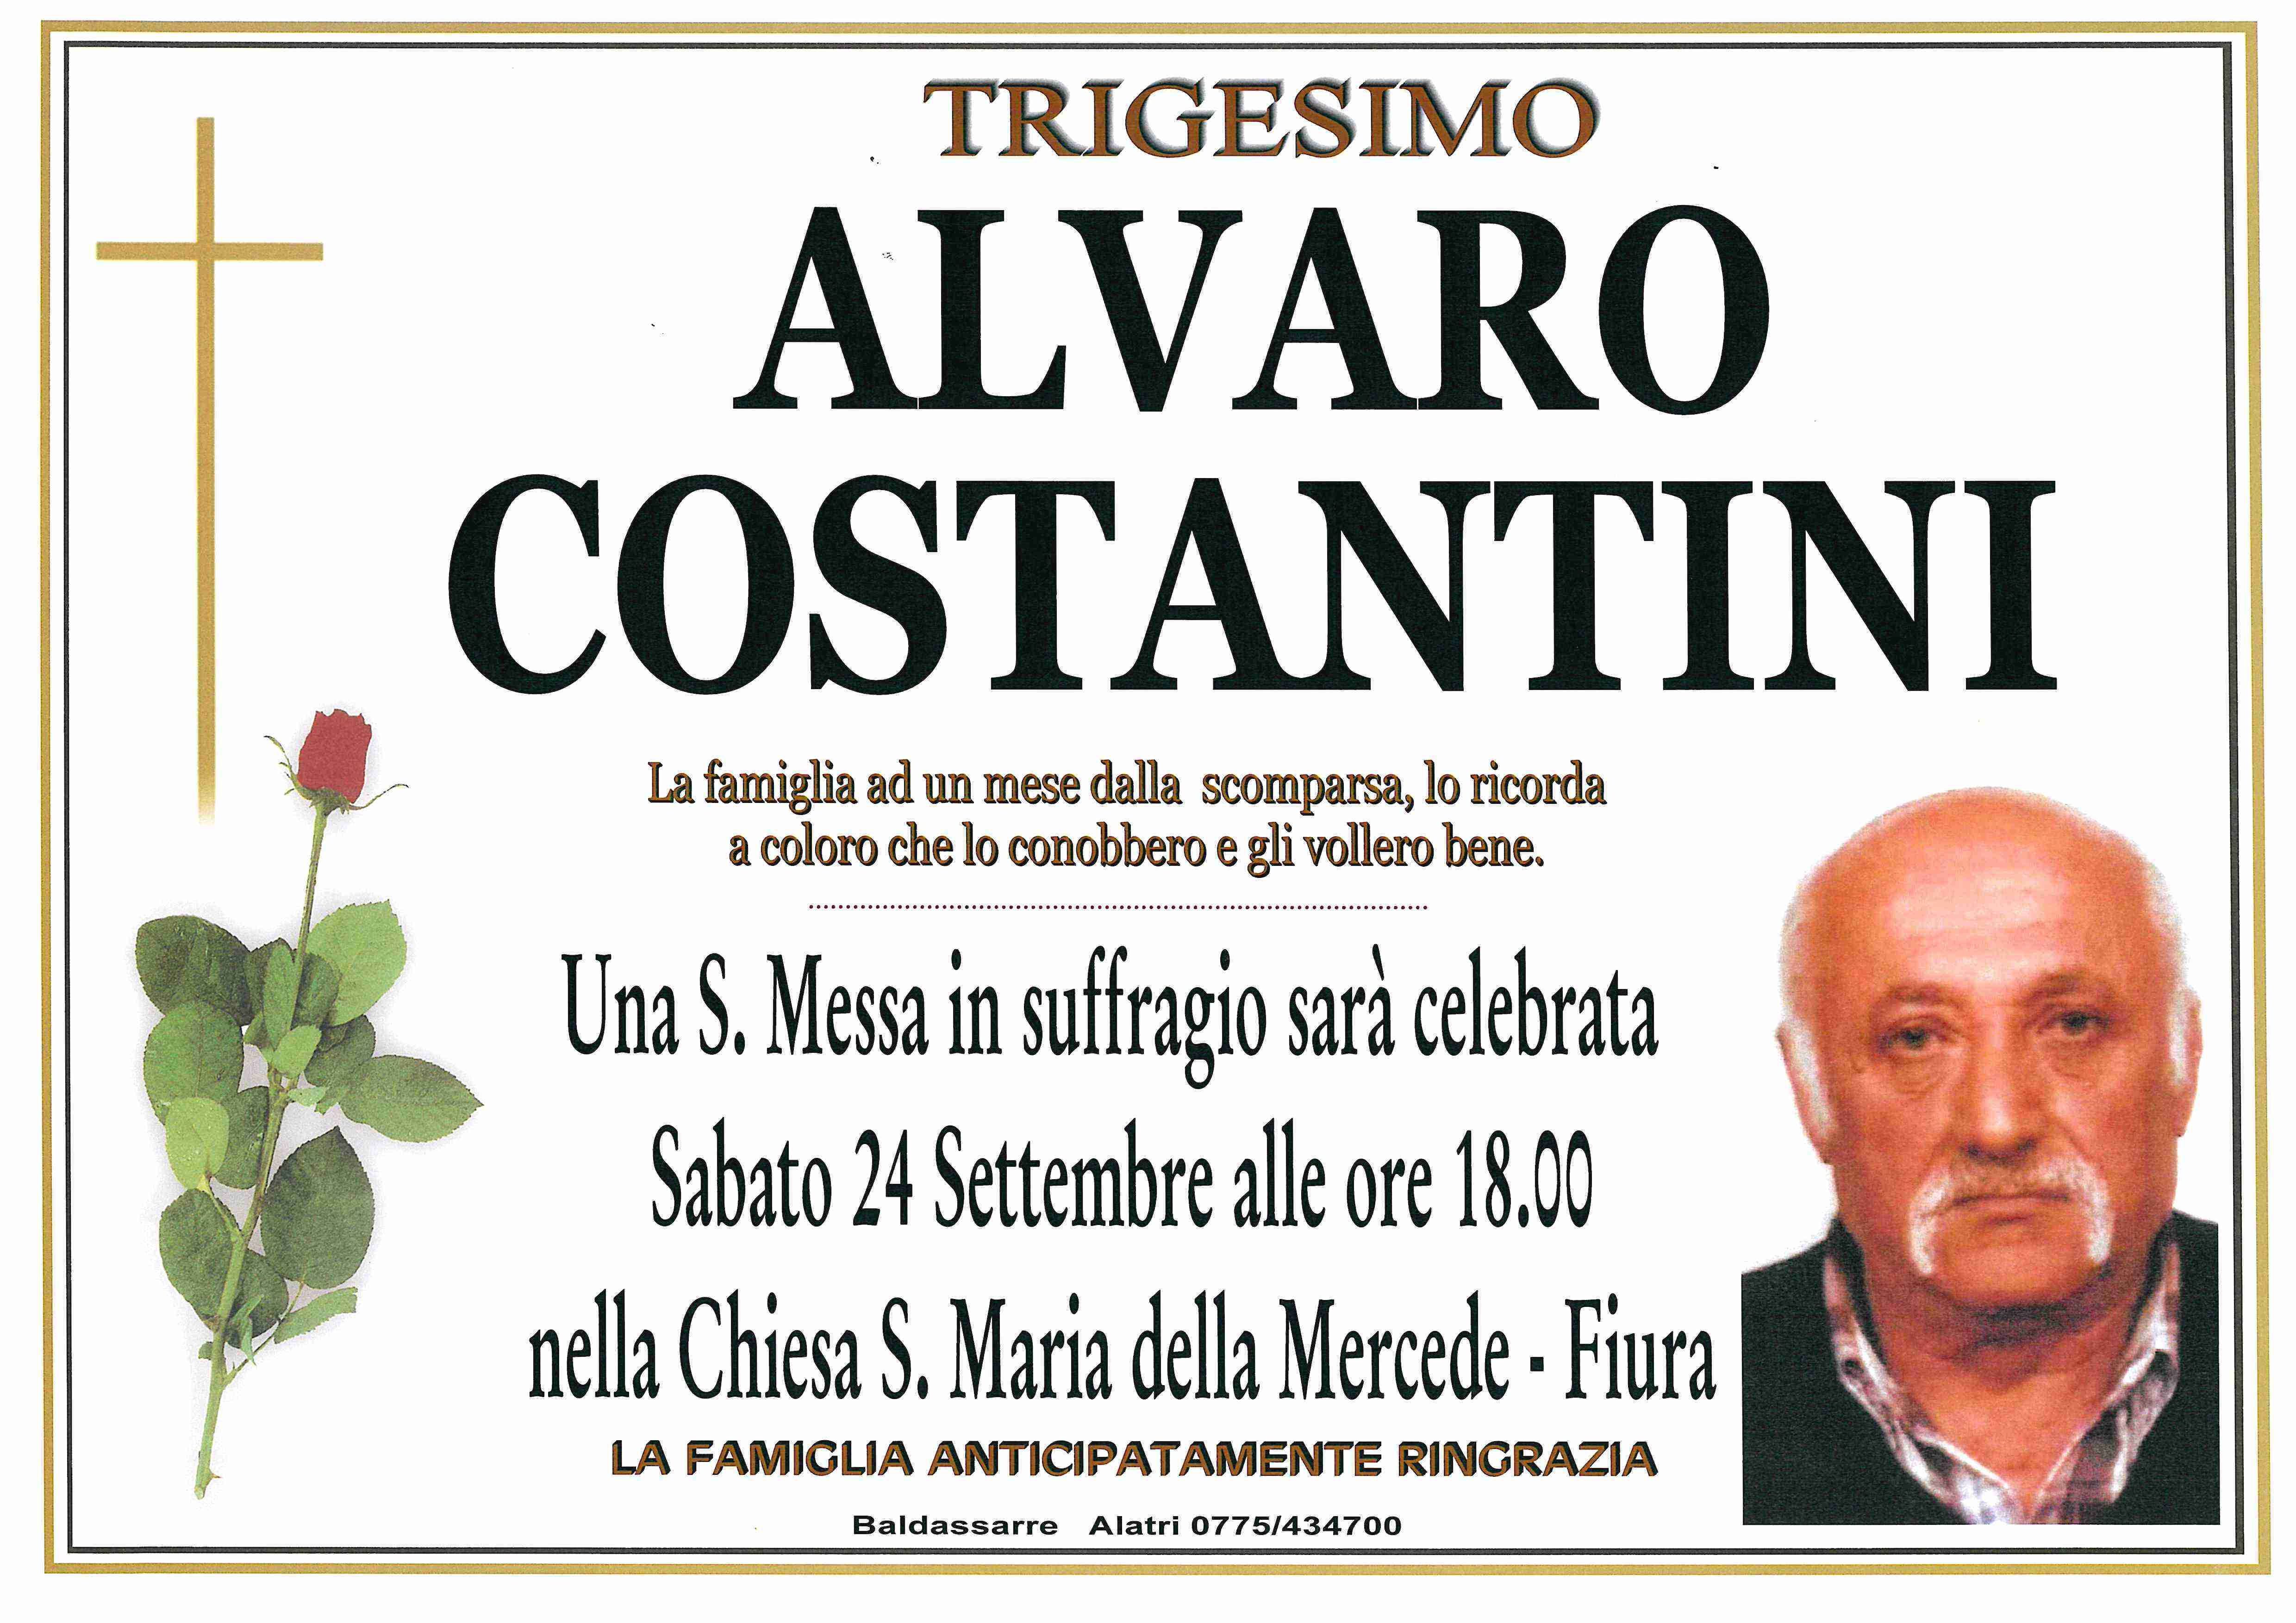 Alvaro Costantini